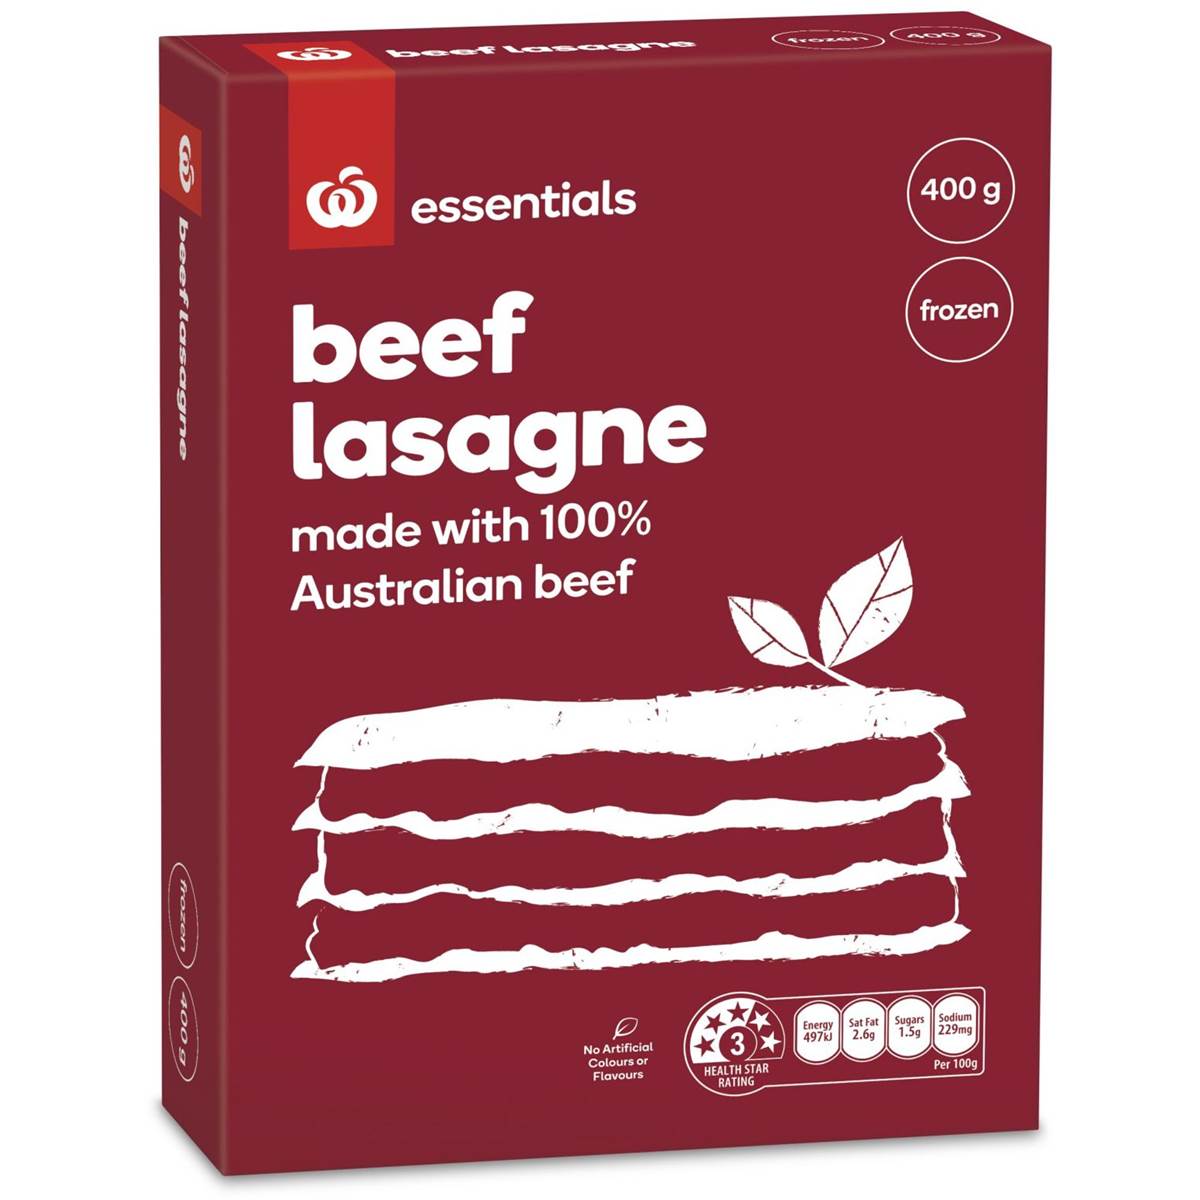 Essentials Frozen Beef Lasagne